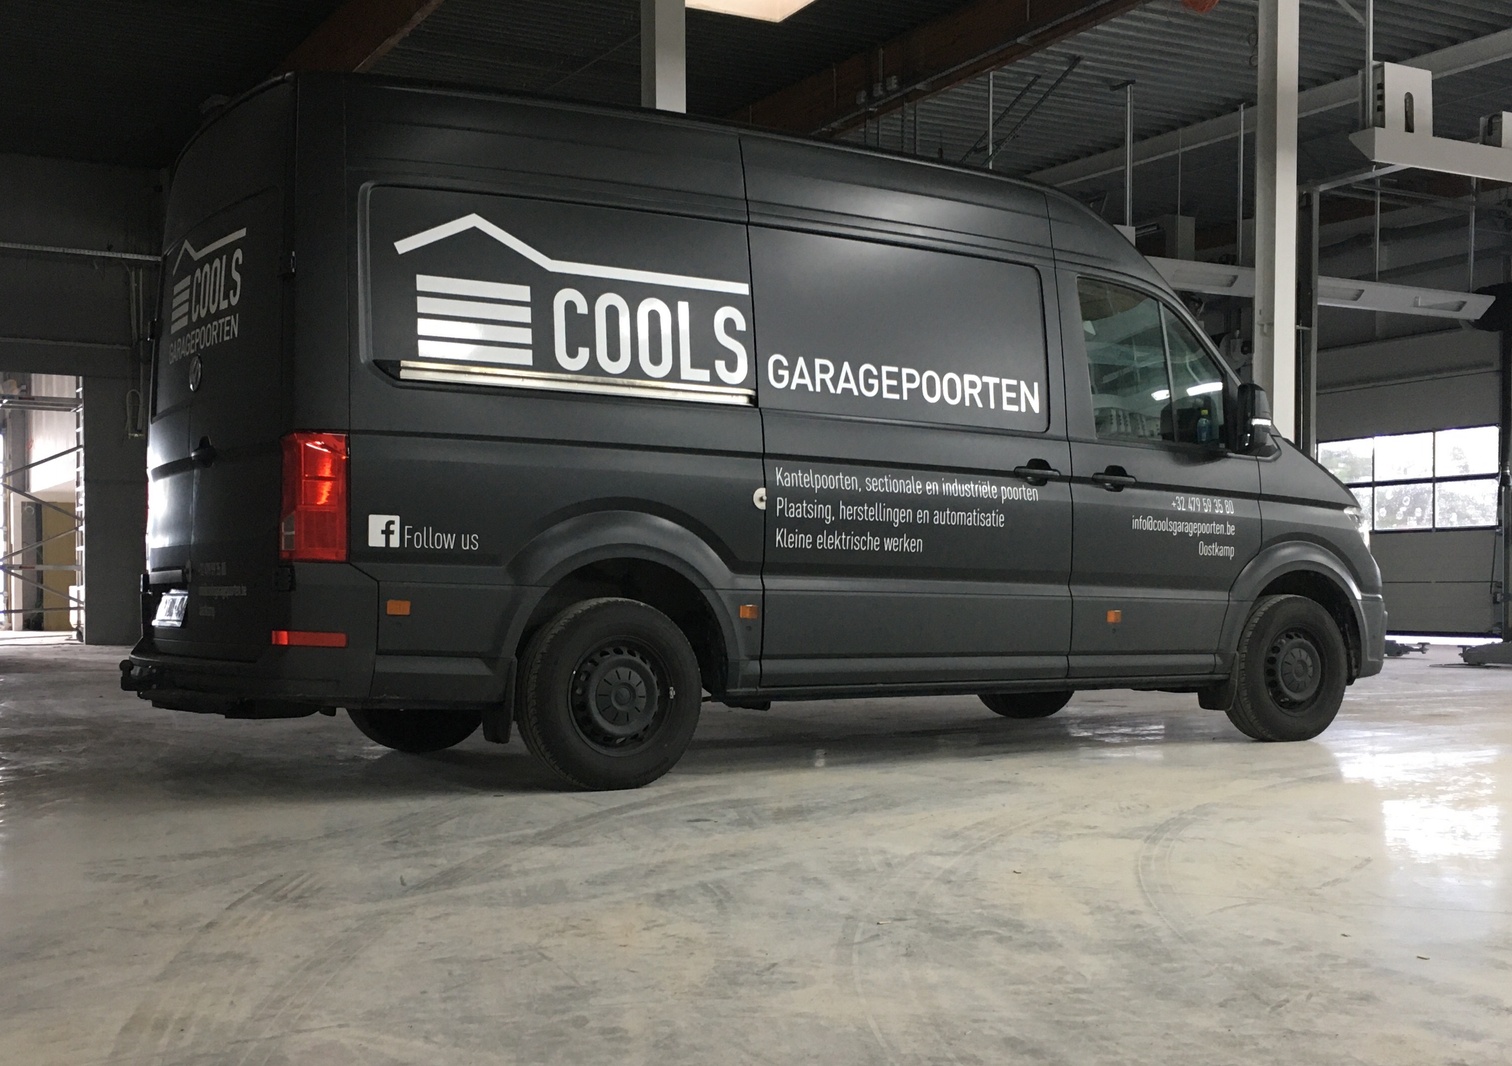 Cools garagepoorten logo